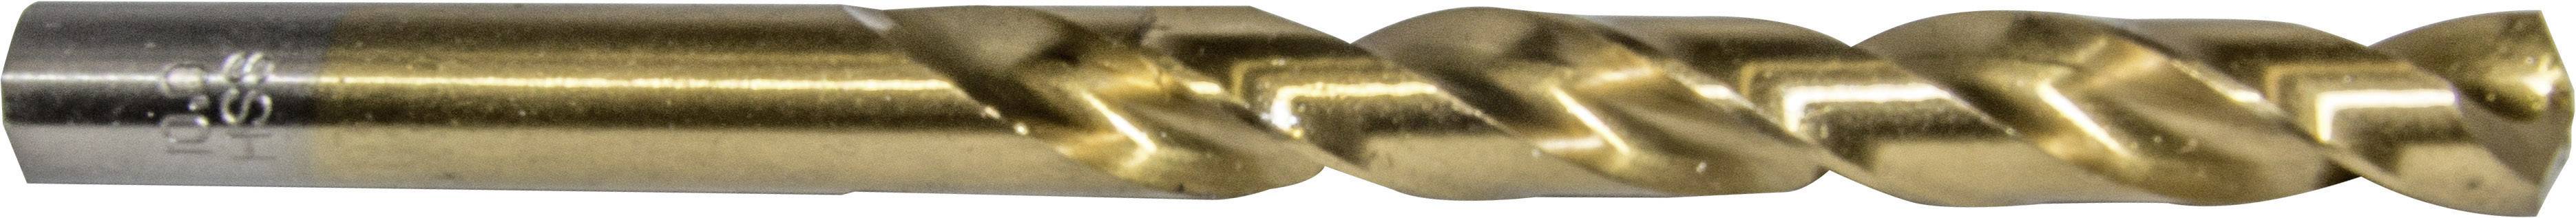 HELLER 29263 4 Metall-Spiralbohrer 1 Stück 4.8 mm Gesamtlänge 86 mm 1 St.